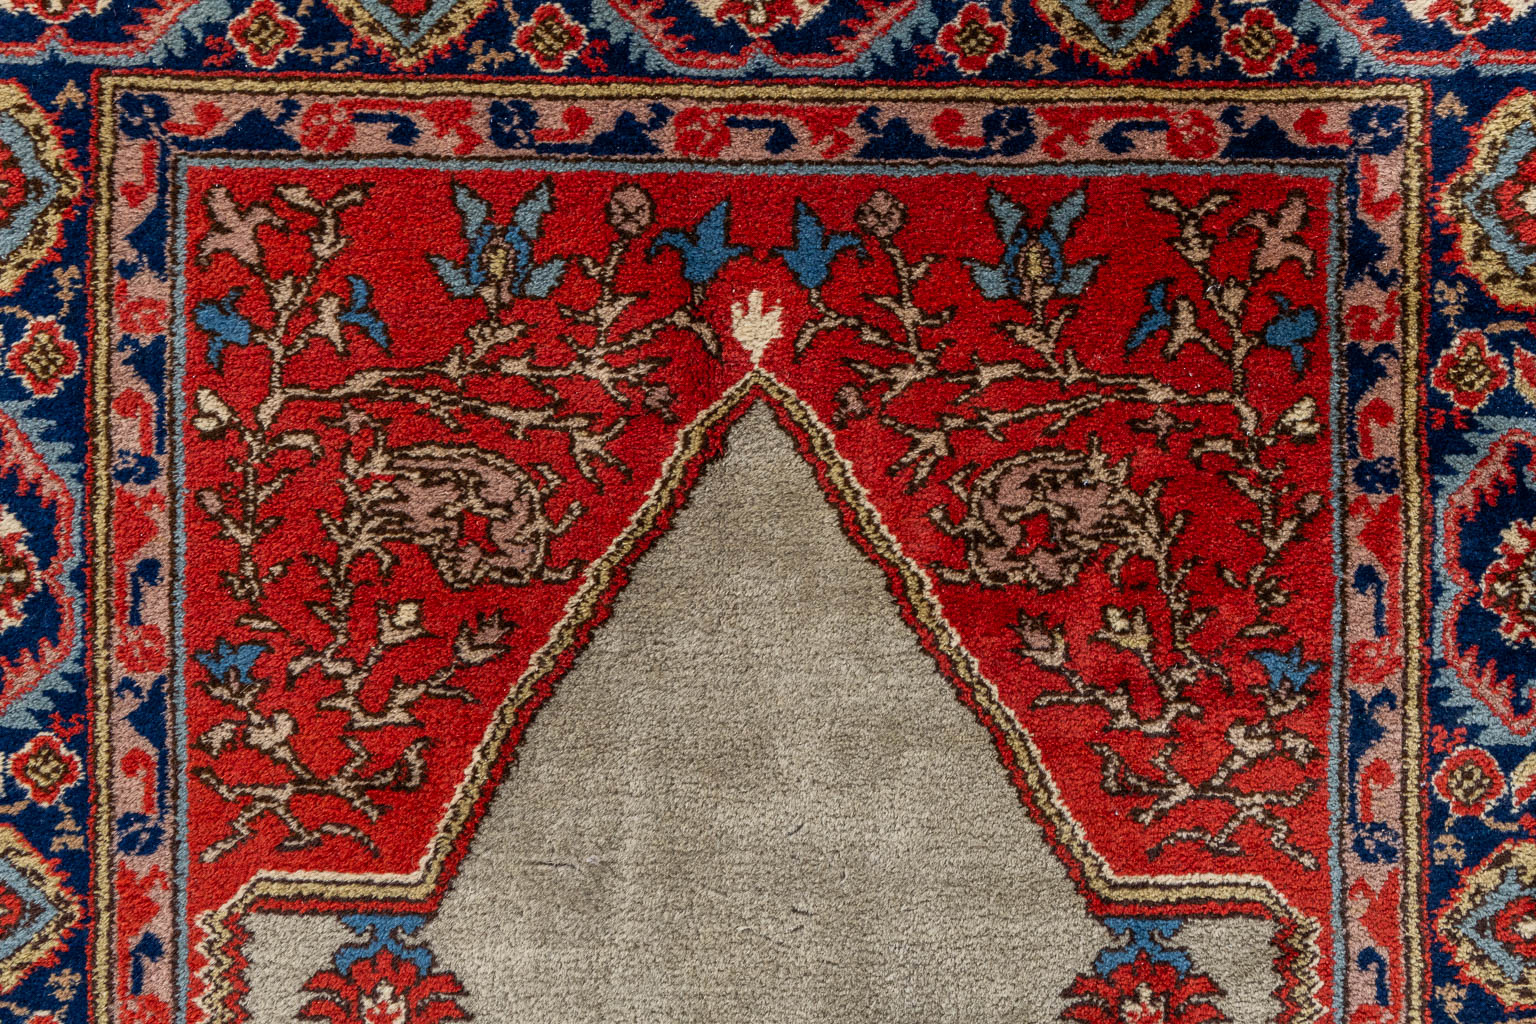 An Oriental hand-made carpet, Kayseri. (L:180 x W:128 cm)